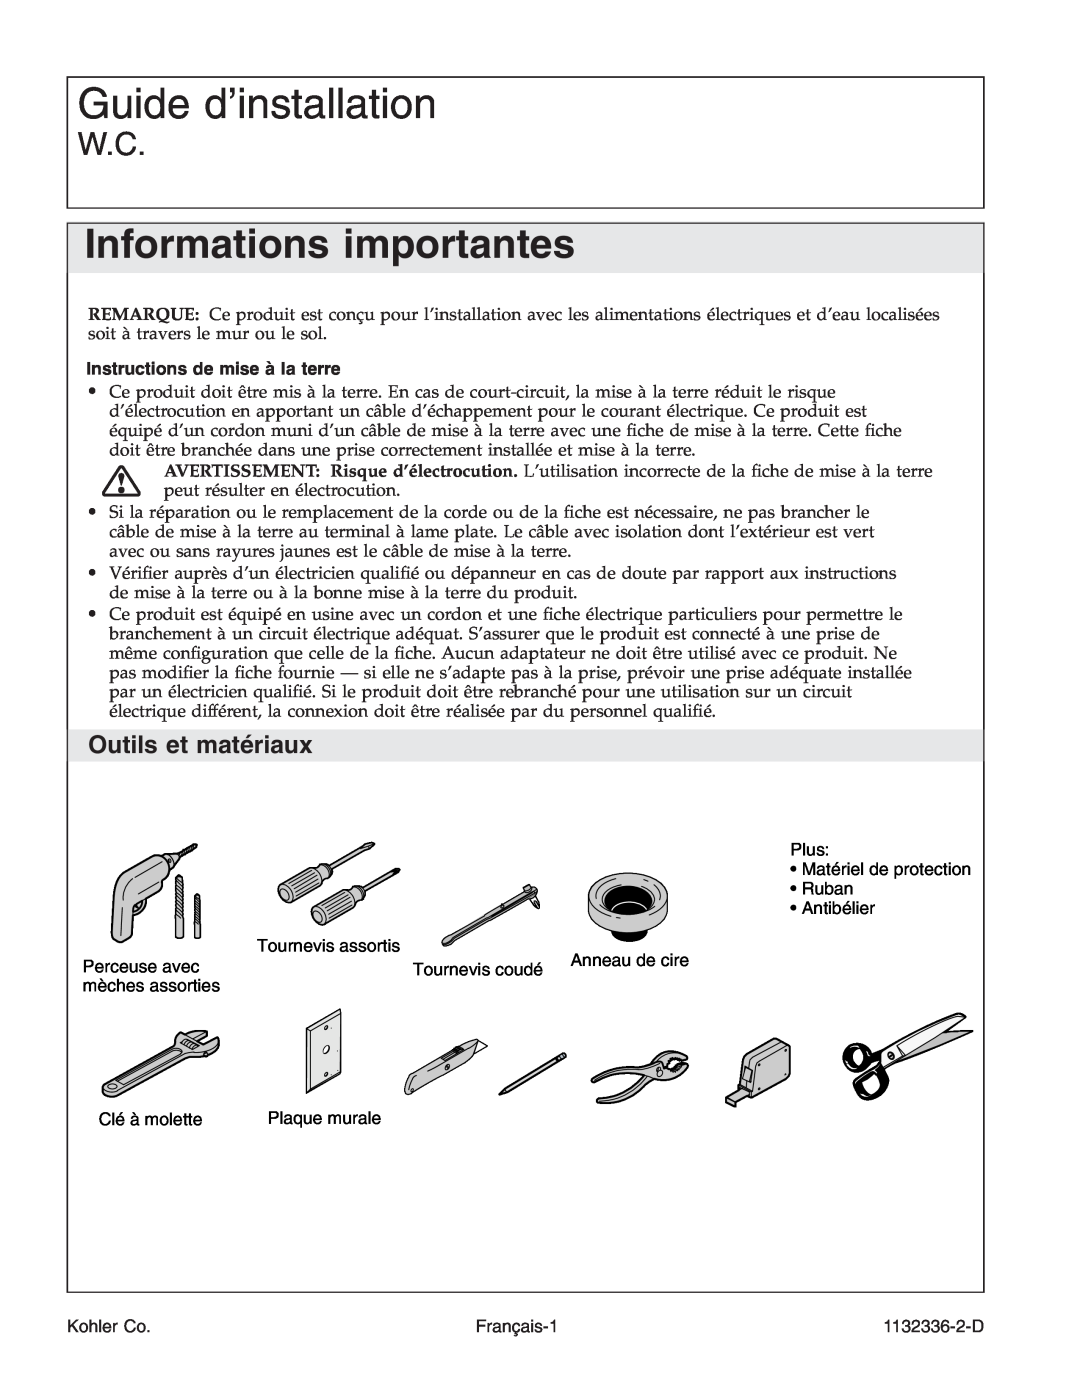 Kohler K-3900 manual Guide d’installation, Informations importantes, Outils et matériaux, Instructions de mise à la terre 